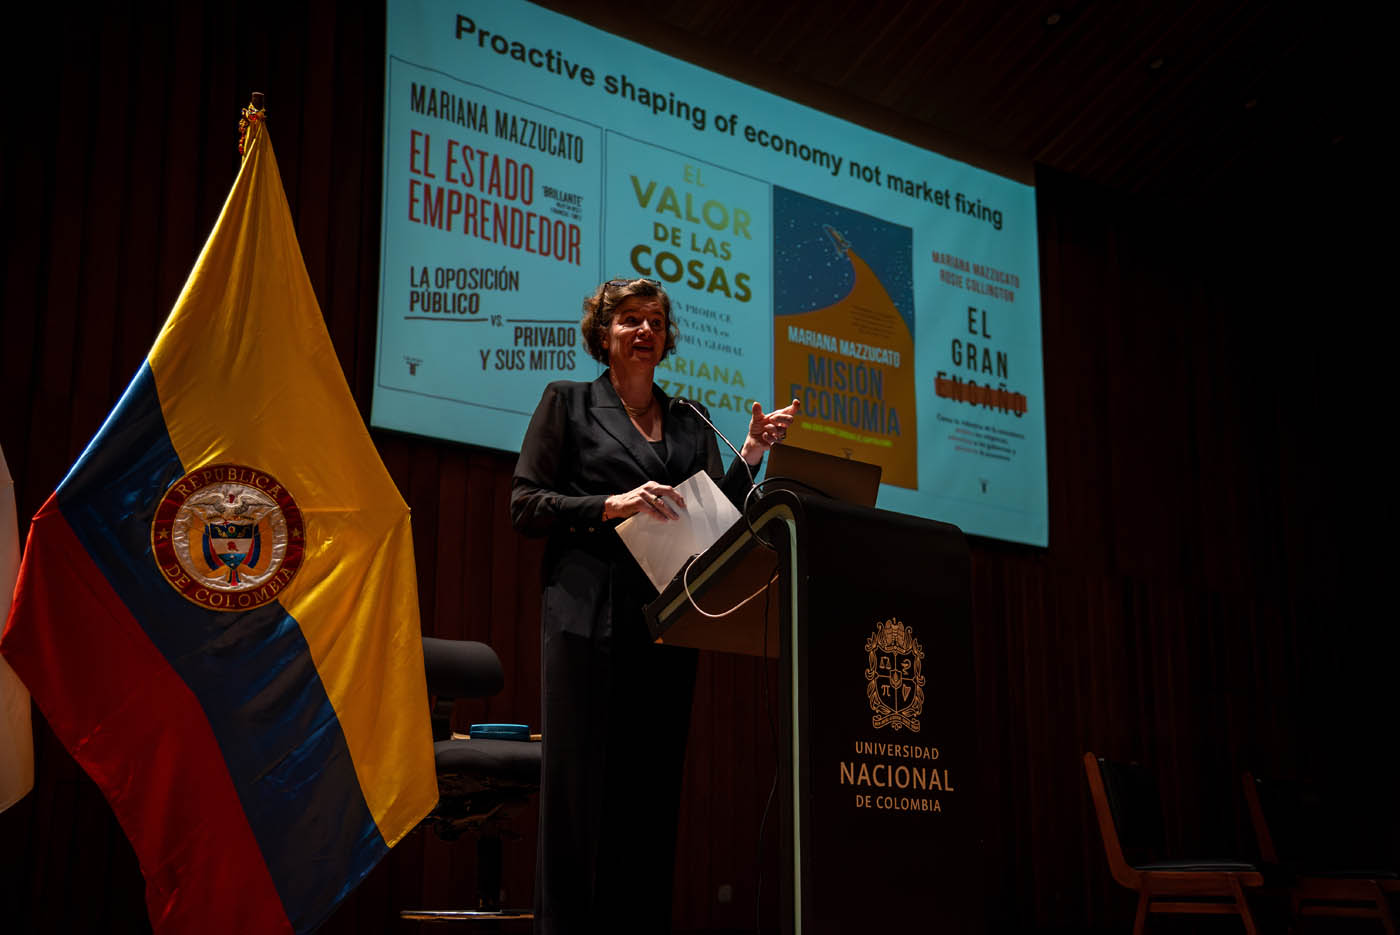 La profesora Mariana Mazzucato dio una conferencia en la UNAL acerca de la transformación del enfoque económico que debe tener el país. Foto: Jeimi Villamizar, Unimedios.